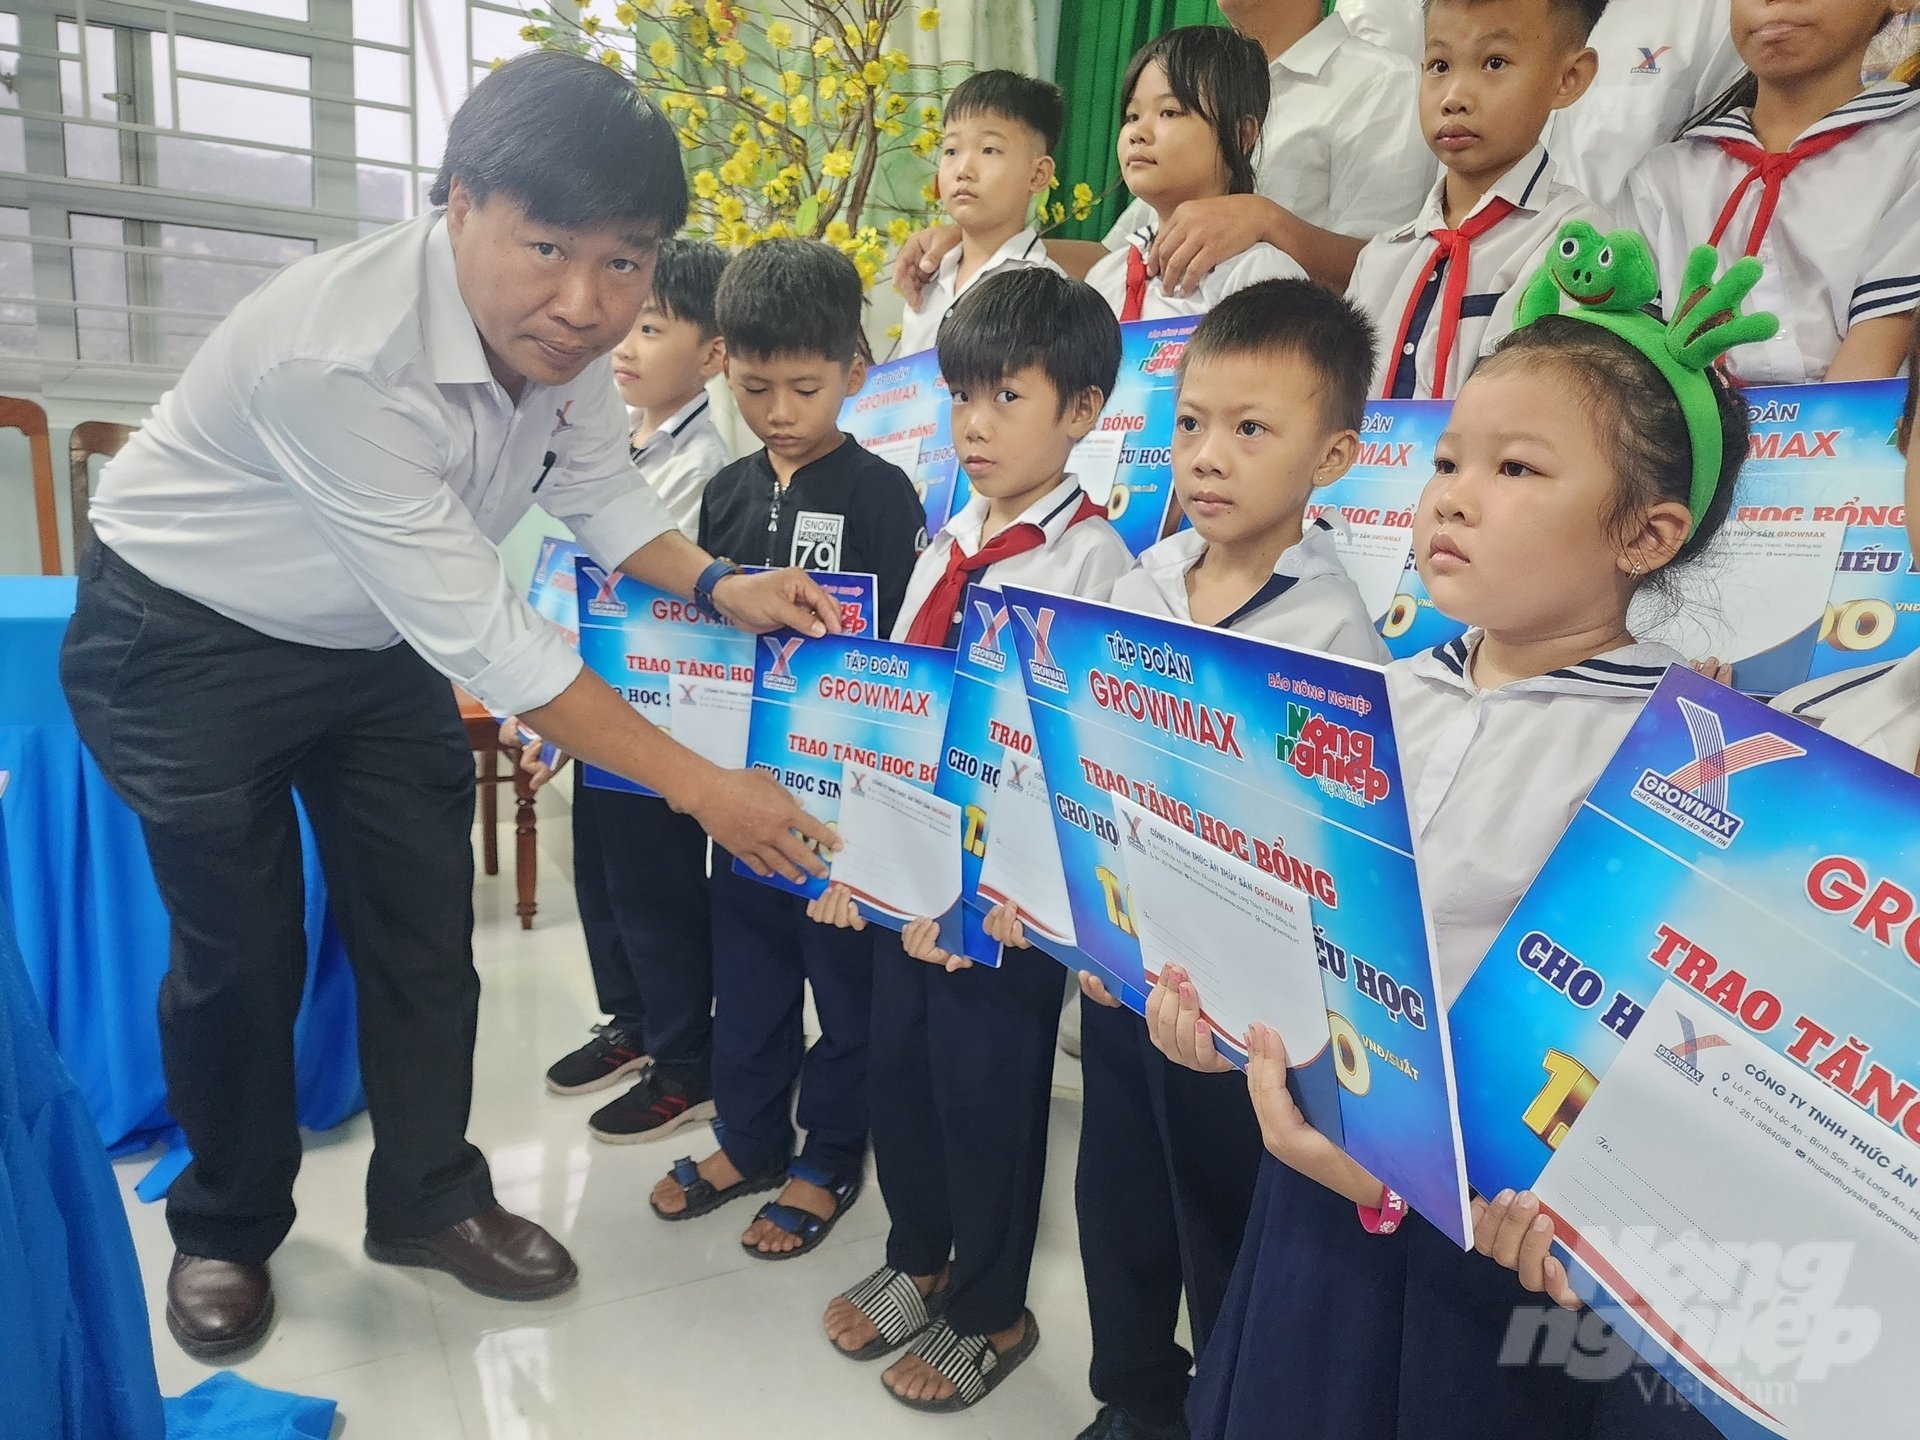 Ông Nguyễn Văn Đại hi vọng những suất học bổng sẽ giúp các em có thêm động lực để đến trường. Ảnh: Phương Chi